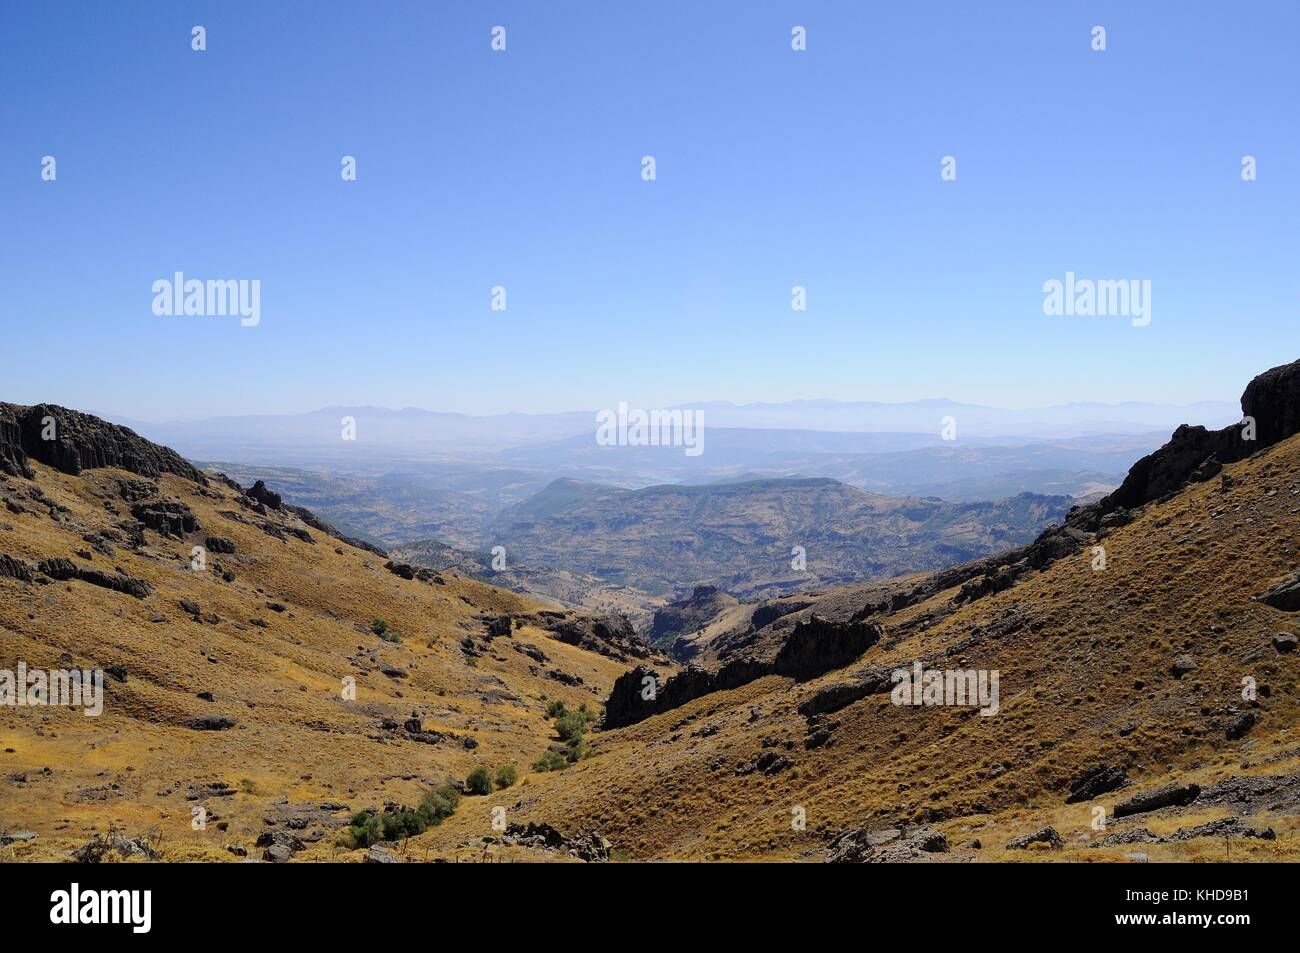 glen, mountain Stock Photo